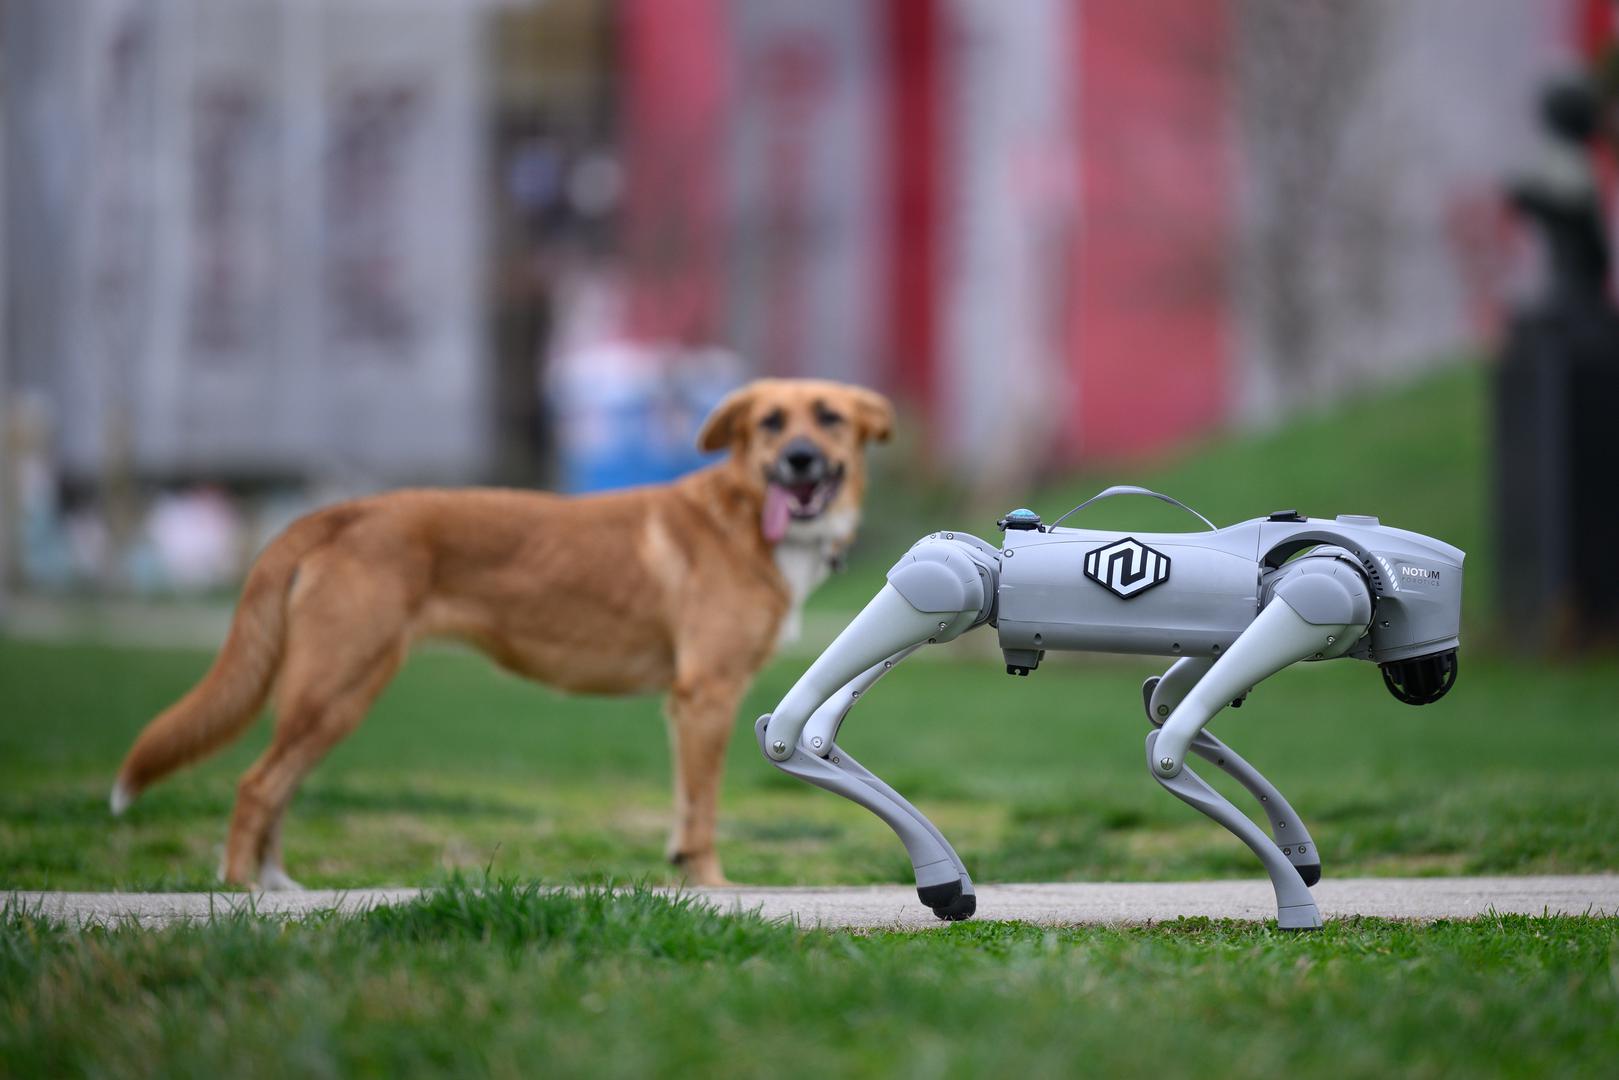 Nova inovacija iz područja robotike dolazi iz velikogoričke tvrtke Notum Robotics. Riječ je o fascinantnom robotskom psu koji je napravljen kako bi revolucionirao različite industrije i sektore. Iako nije unikatni proizvod već komercijalni, njegova jedinstvenost leži u programiranju i načinu na koji se koristi.